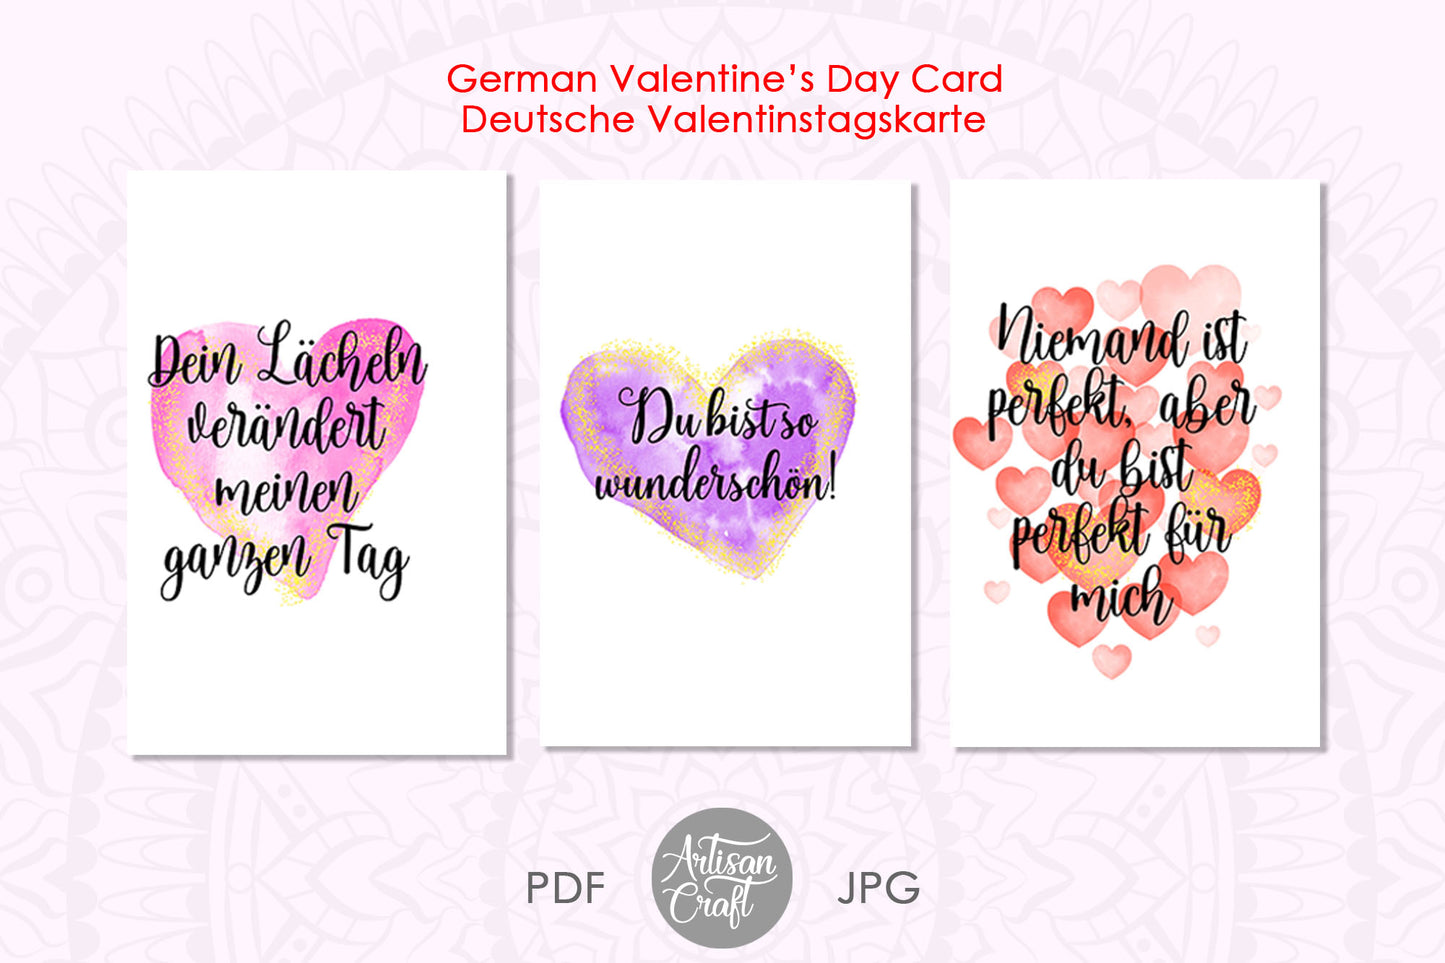 German Valentines Day Cards, Valentinstagskarten, PDF